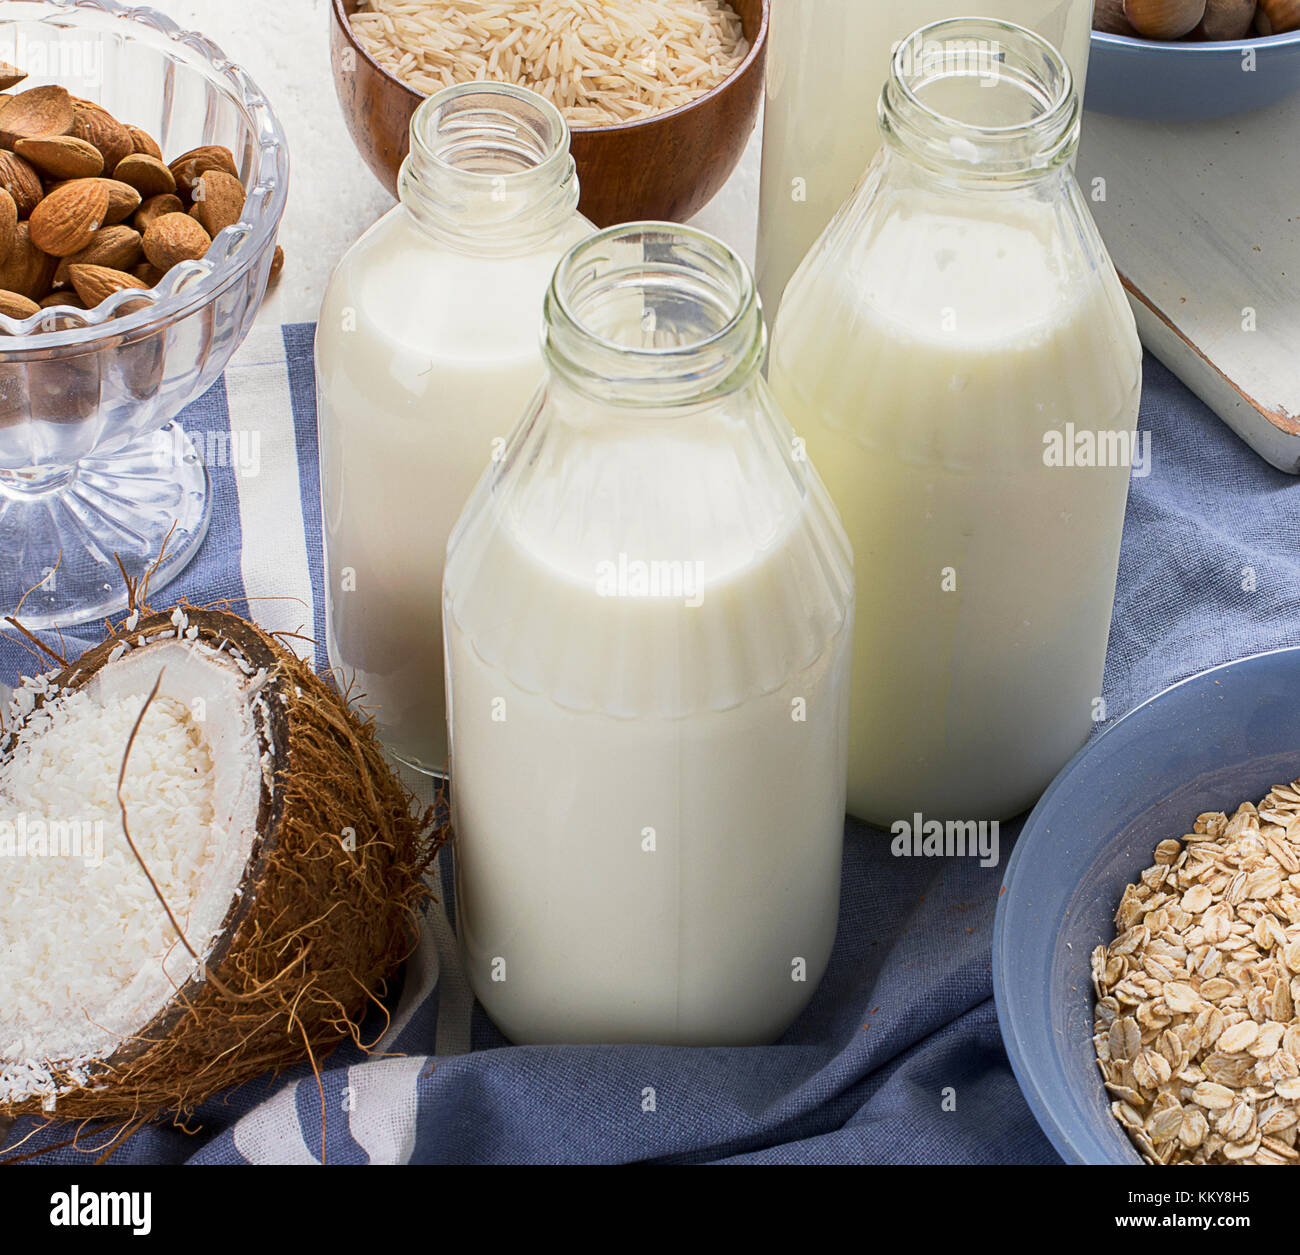 D'autres types de non-vegan. laits Le lait. Banque D'Images